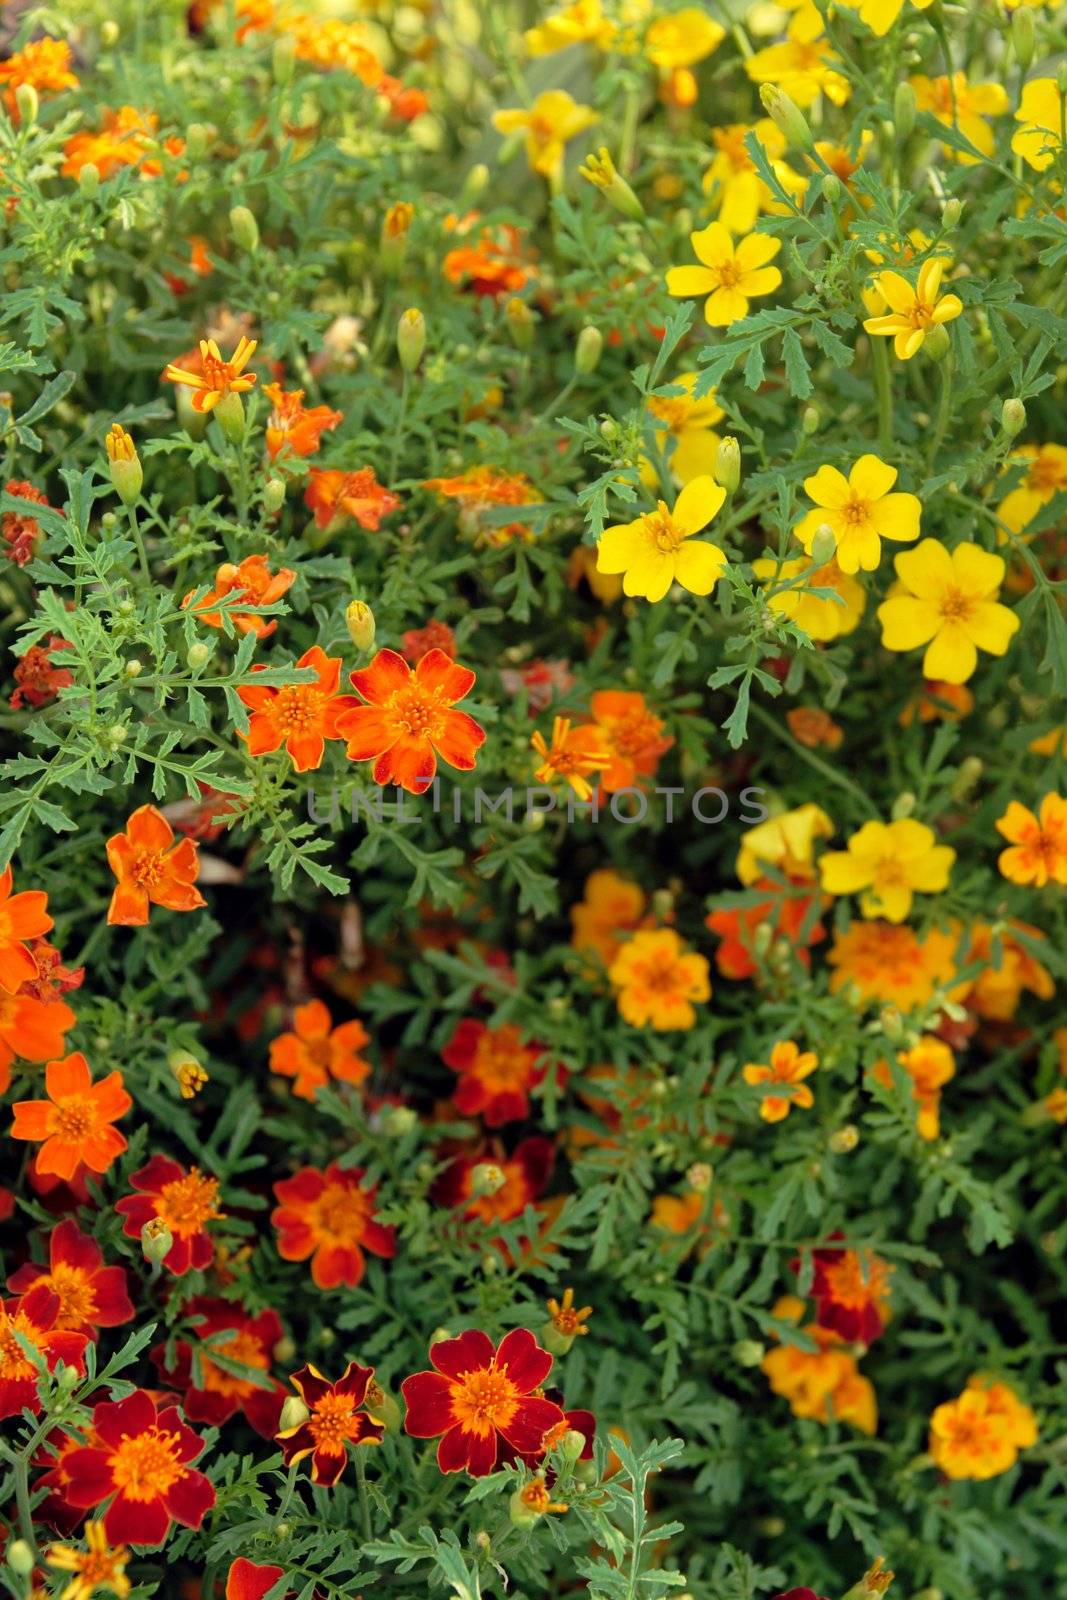 Happy sunny flowers by anikasalsera